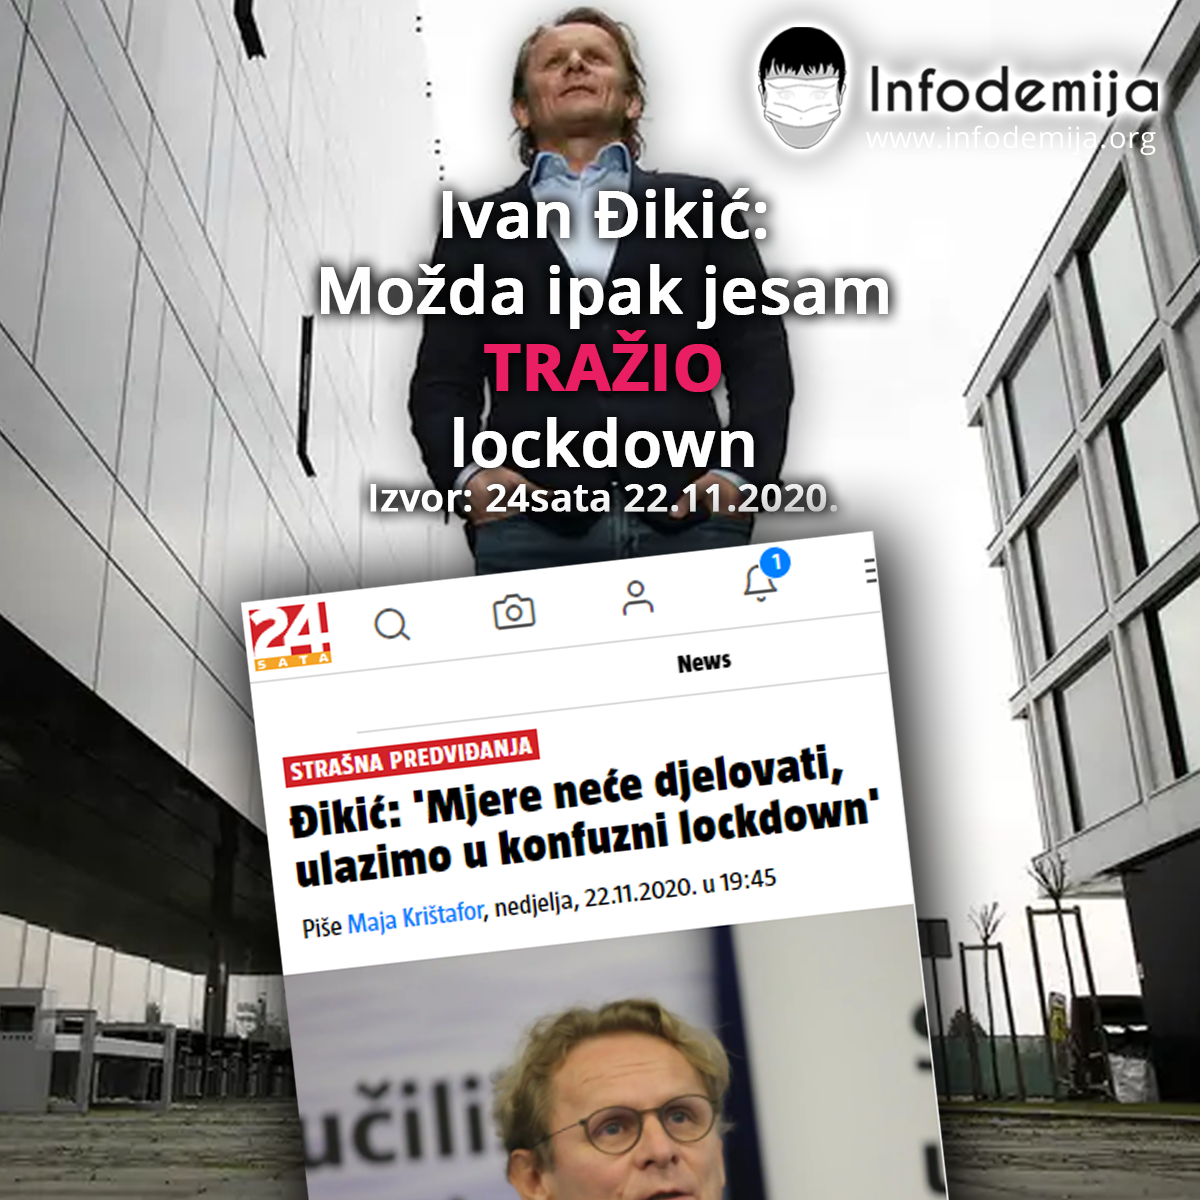 Ivan Đikić - Tražim lockdown